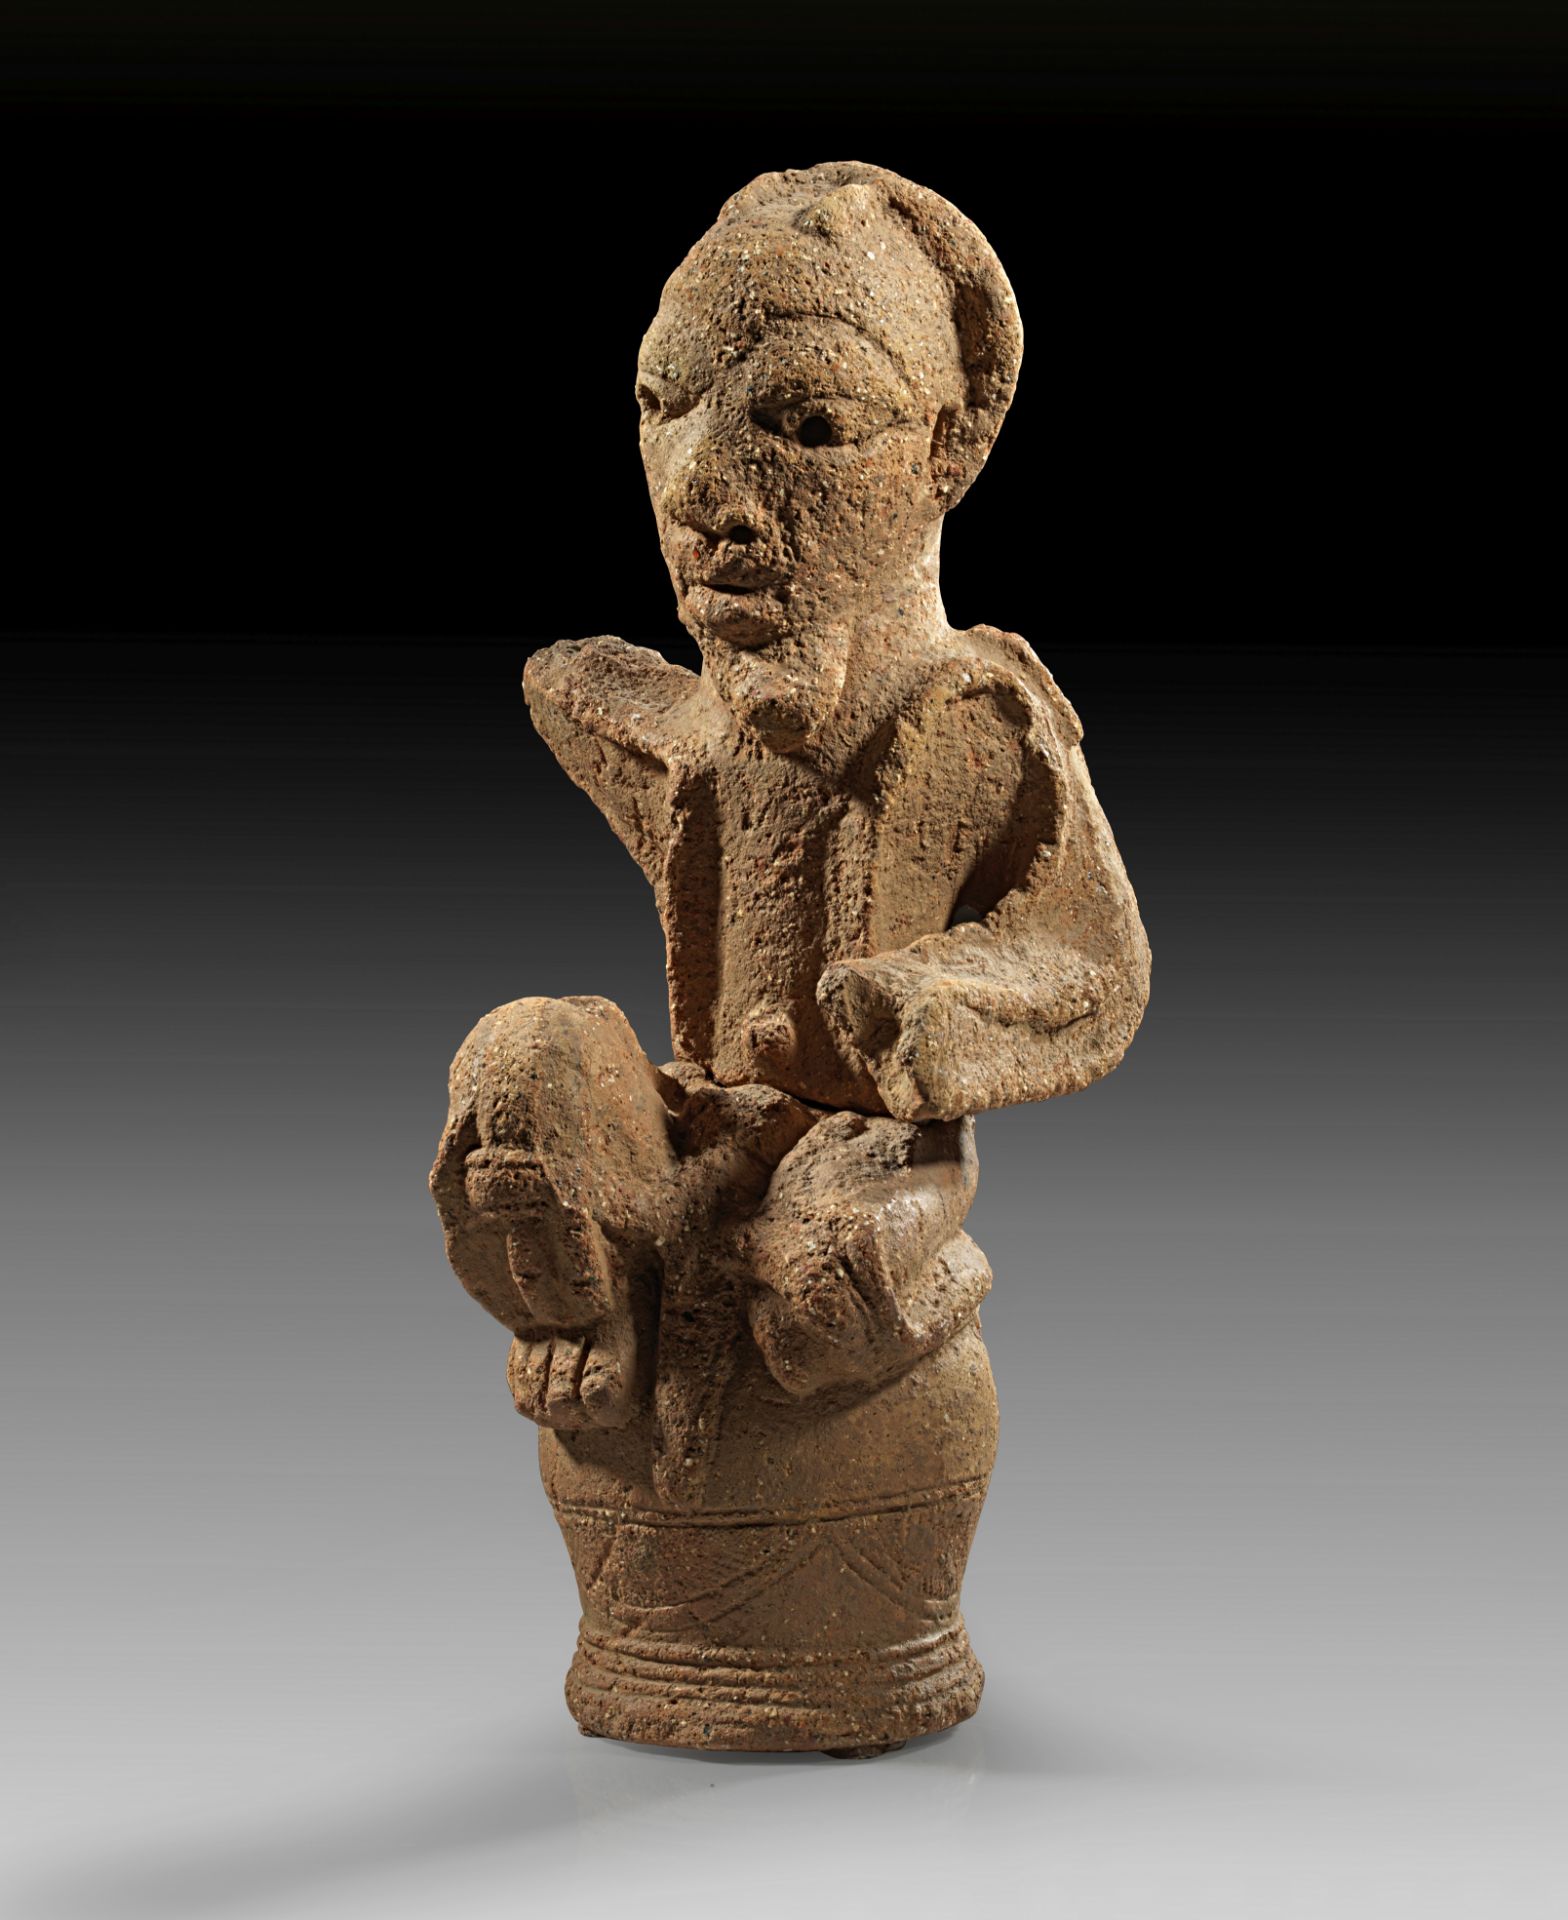 Nok, Nigeria, 500 BC - 200 A.D. terracotta seated figure.